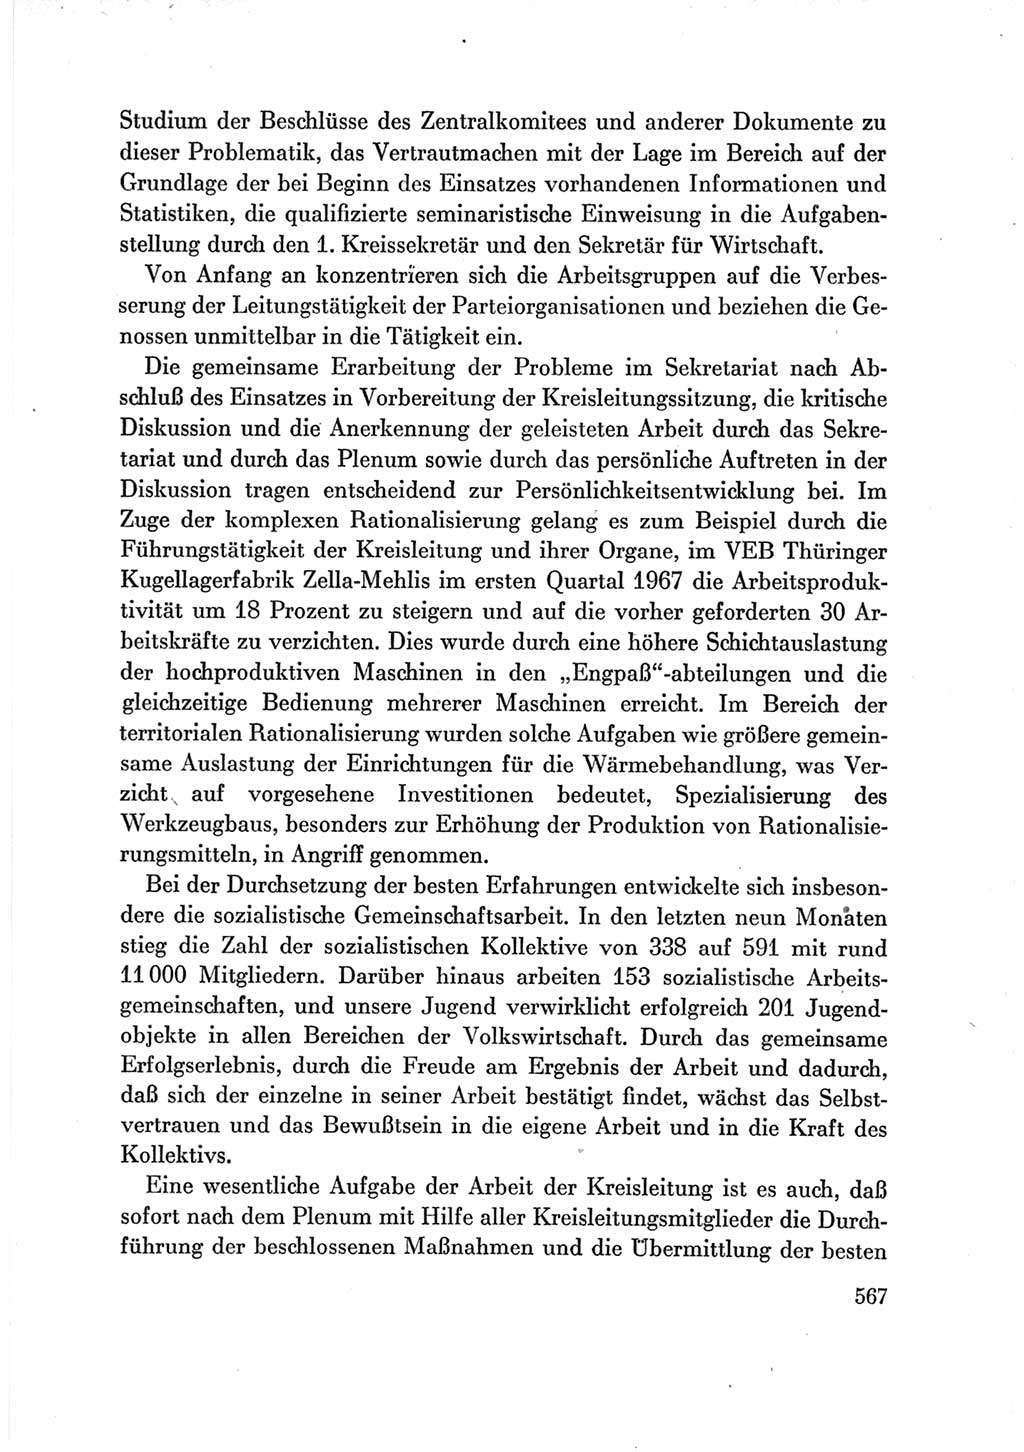 Protokoll der Verhandlungen des Ⅶ. Parteitages der Sozialistischen Einheitspartei Deutschlands (SED) [Deutsche Demokratische Republik (DDR)] 1967, Band Ⅲ, Seite 567 (Prot. Verh. Ⅶ. PT SED DDR 1967, Bd. Ⅲ, S. 567)